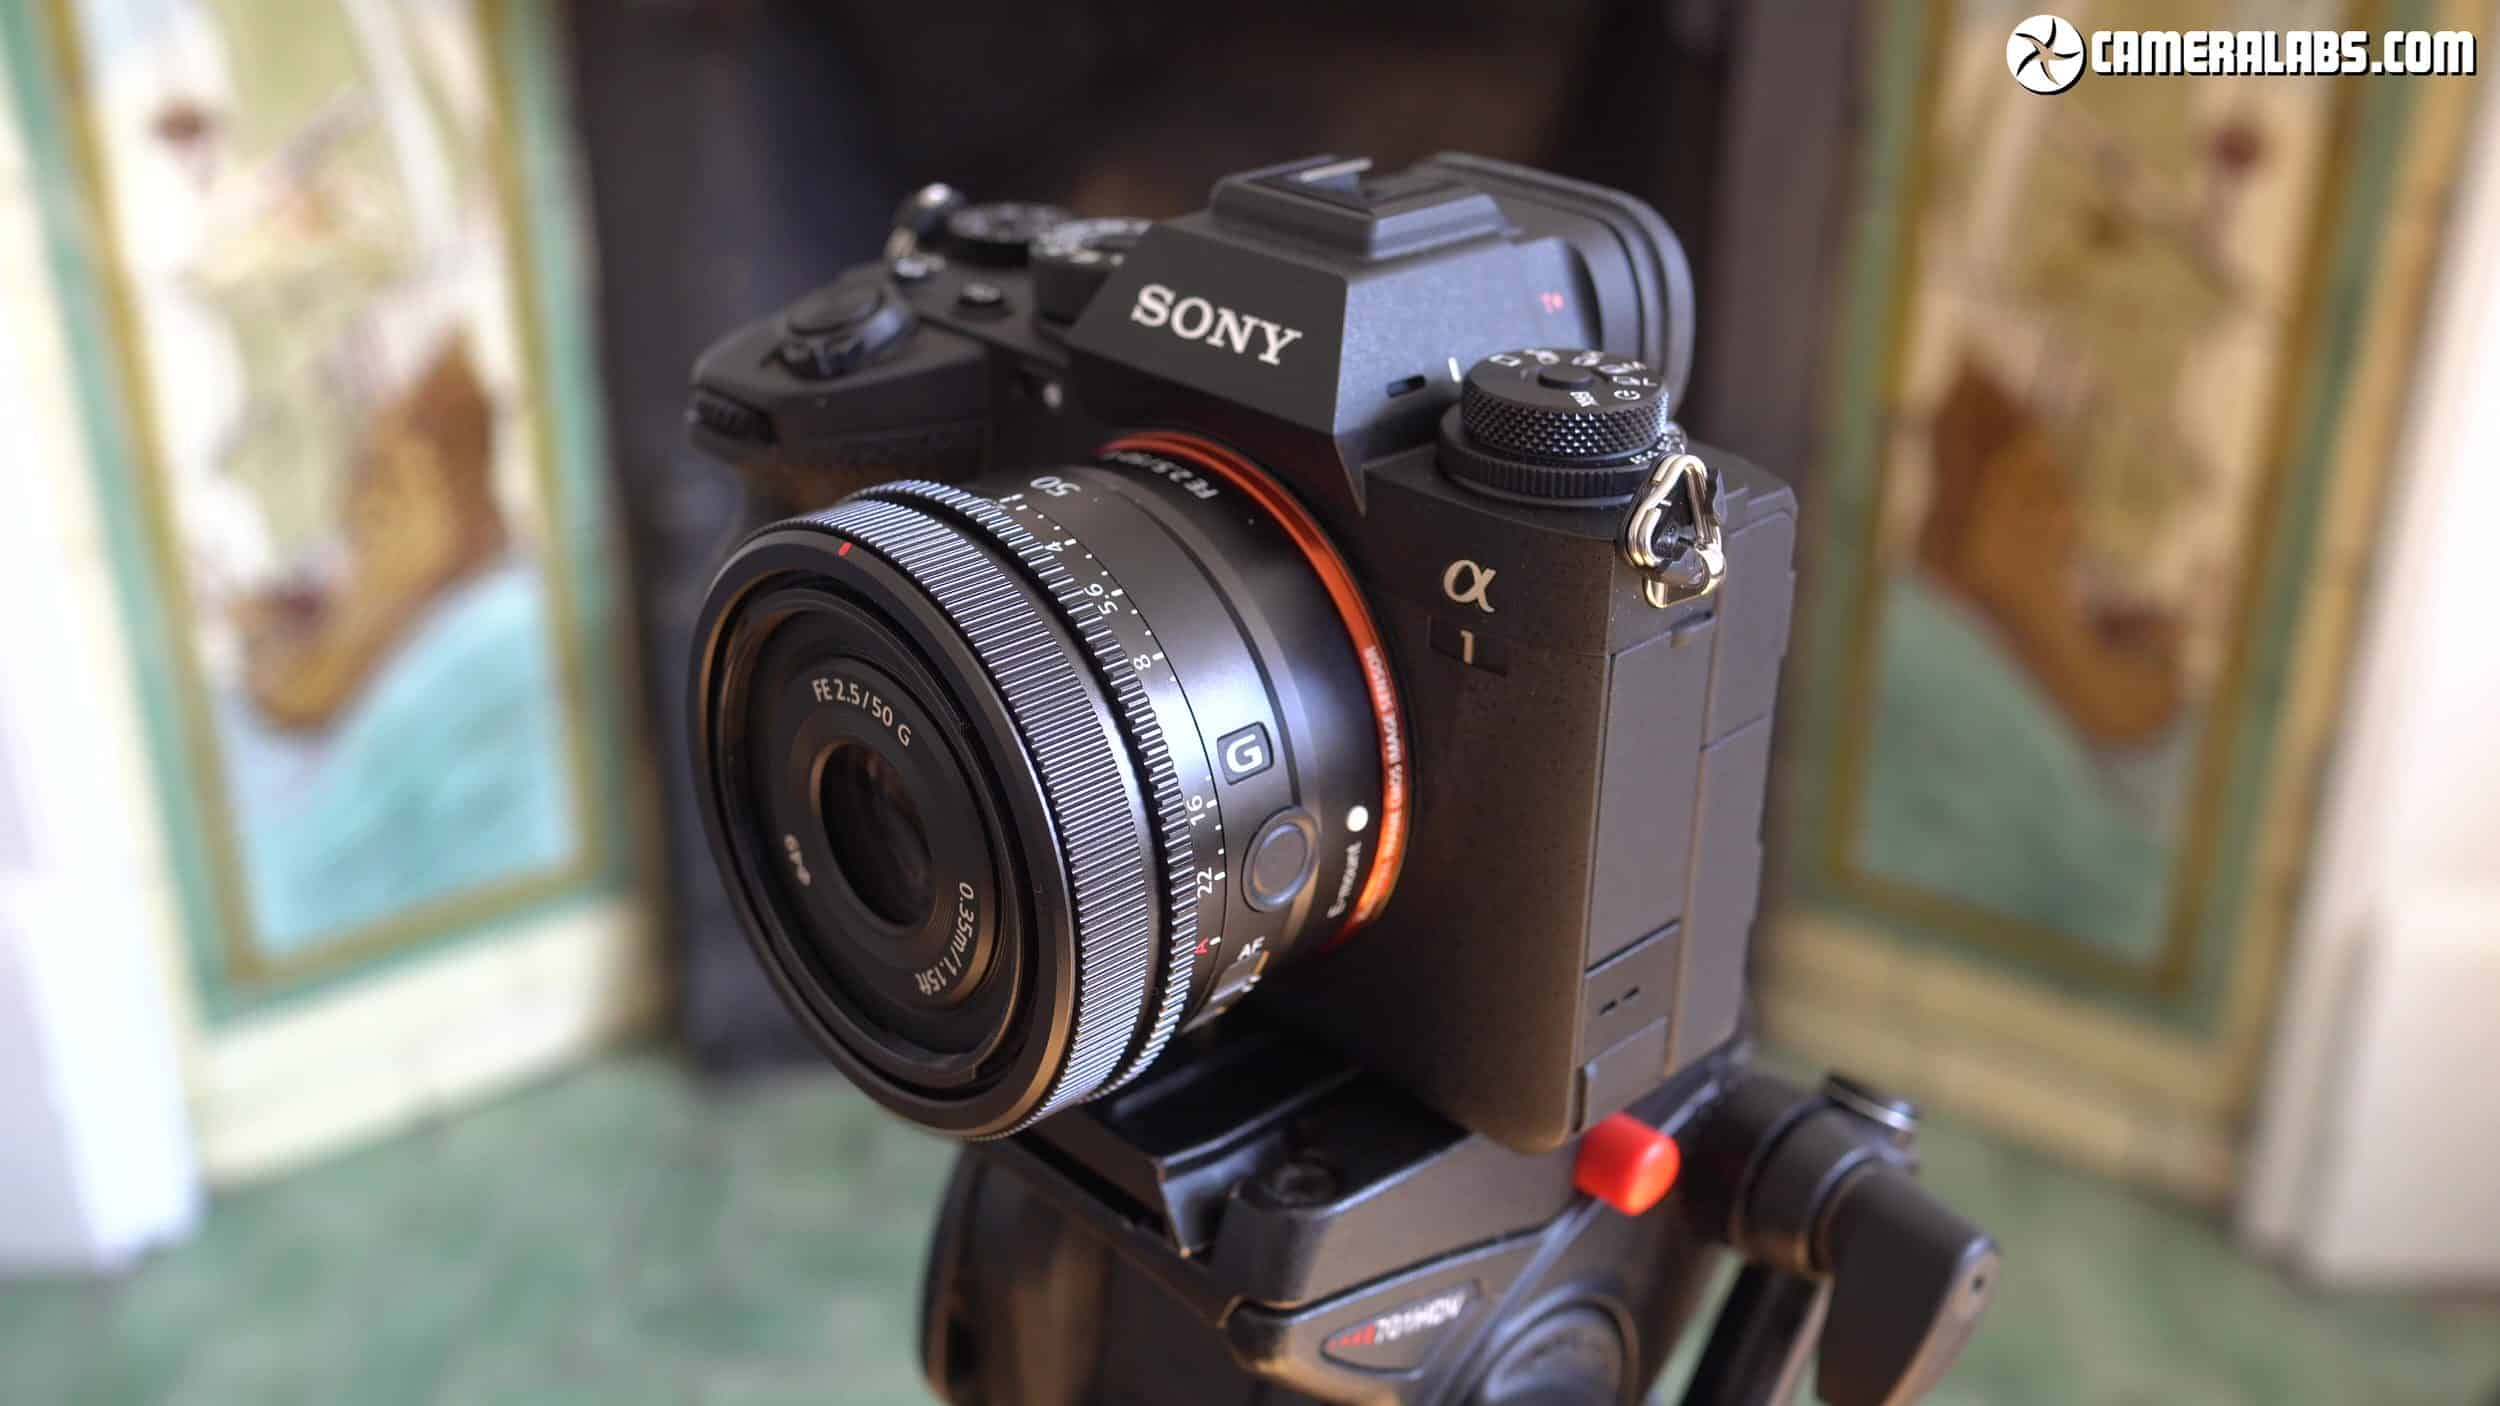 Ống kính Sony FE 50mm F2.5 G